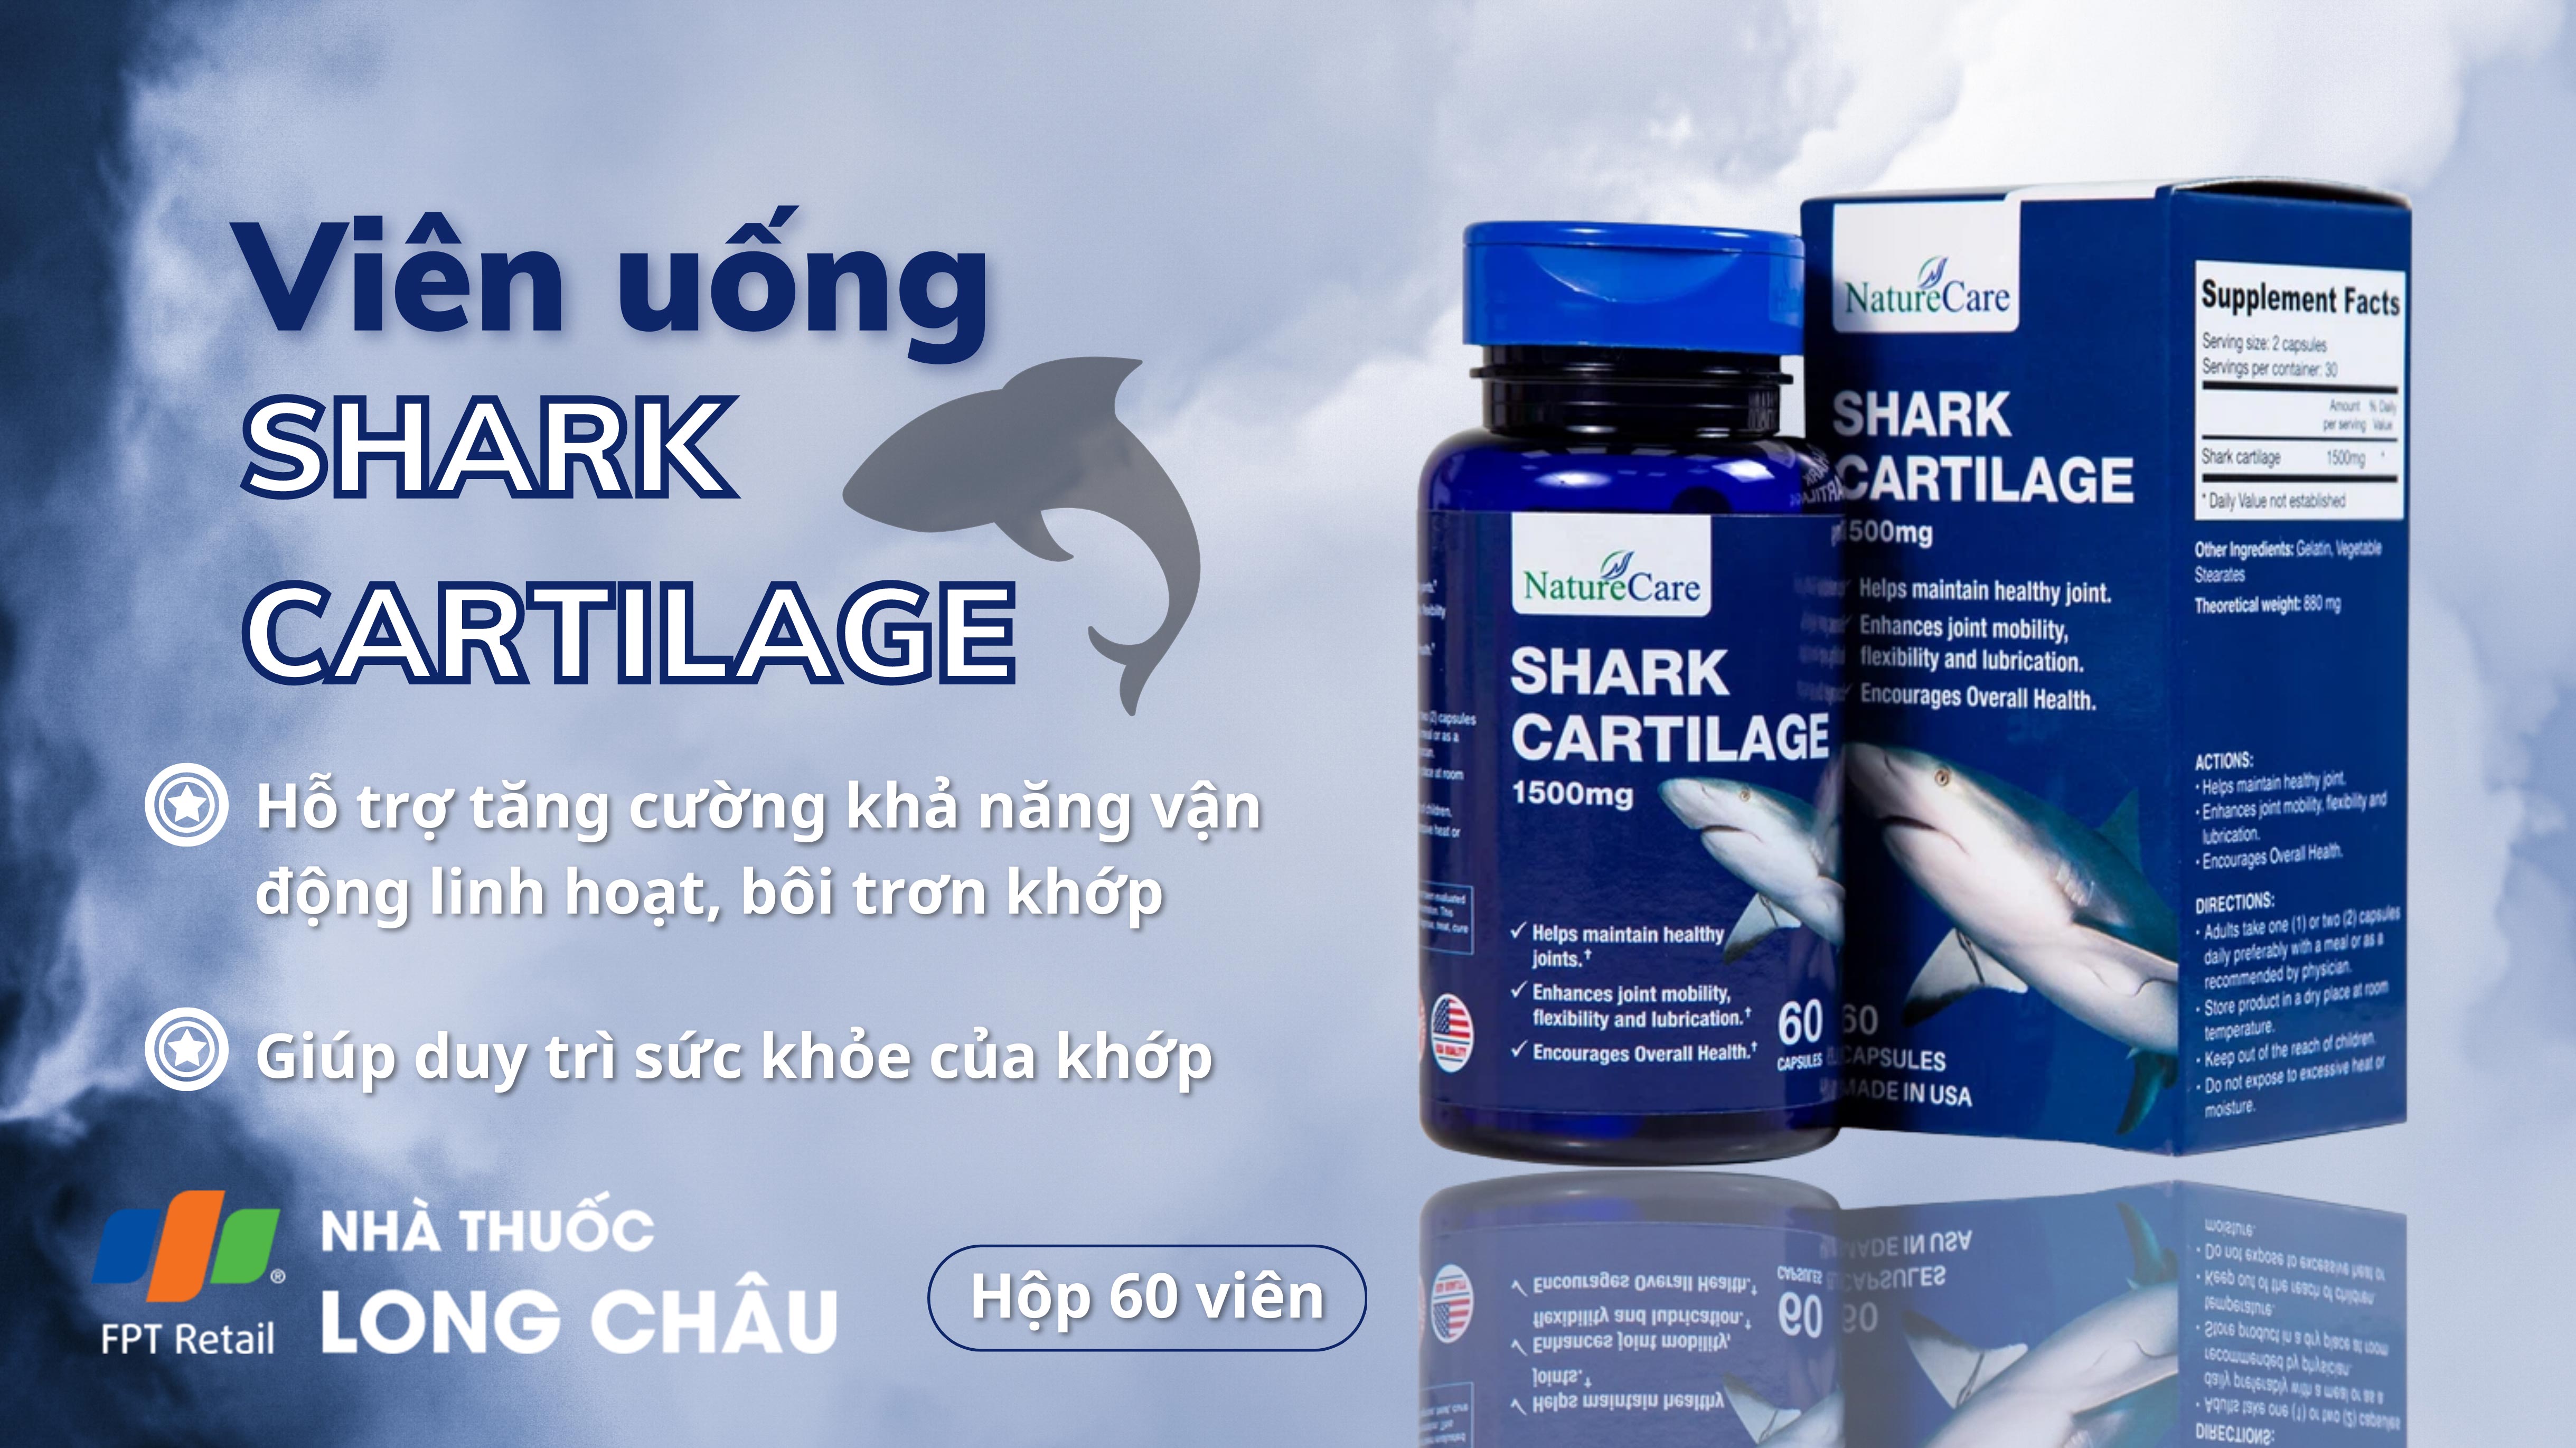 00021669_banner_Viên-uống-Shark-Cartilage-NatureCare-hỗ-trợ-tăng-cường-khả-năng-vận-động-linh-hoạt-và-bôi-trơn-khớp.jpg